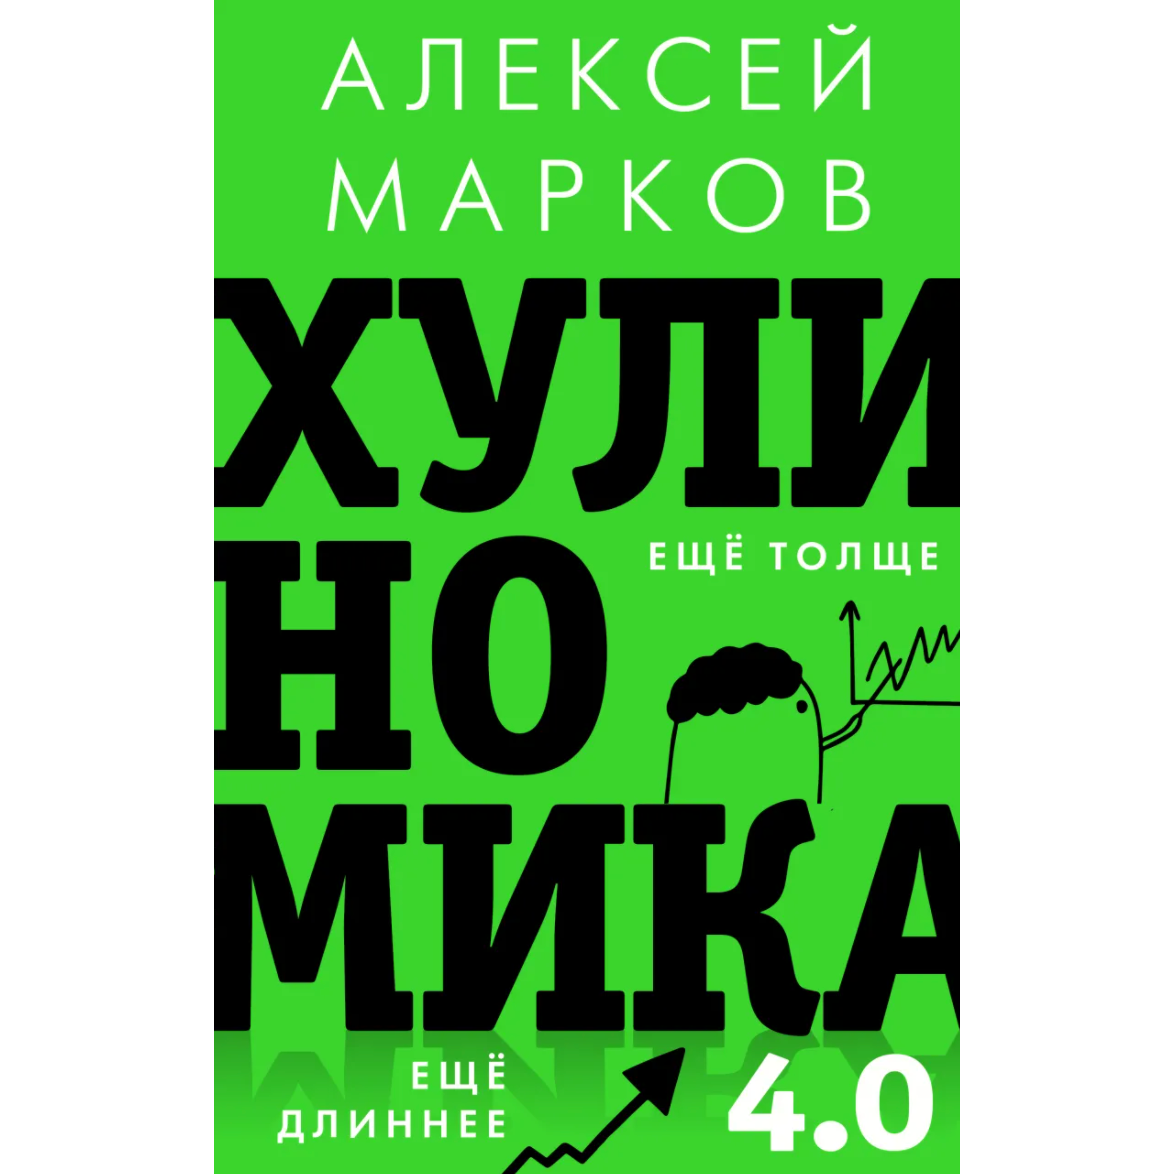 Алексей Марков «Хулиномика 4.0: хулиганская экономика. Еще толще. Еще длиннее»